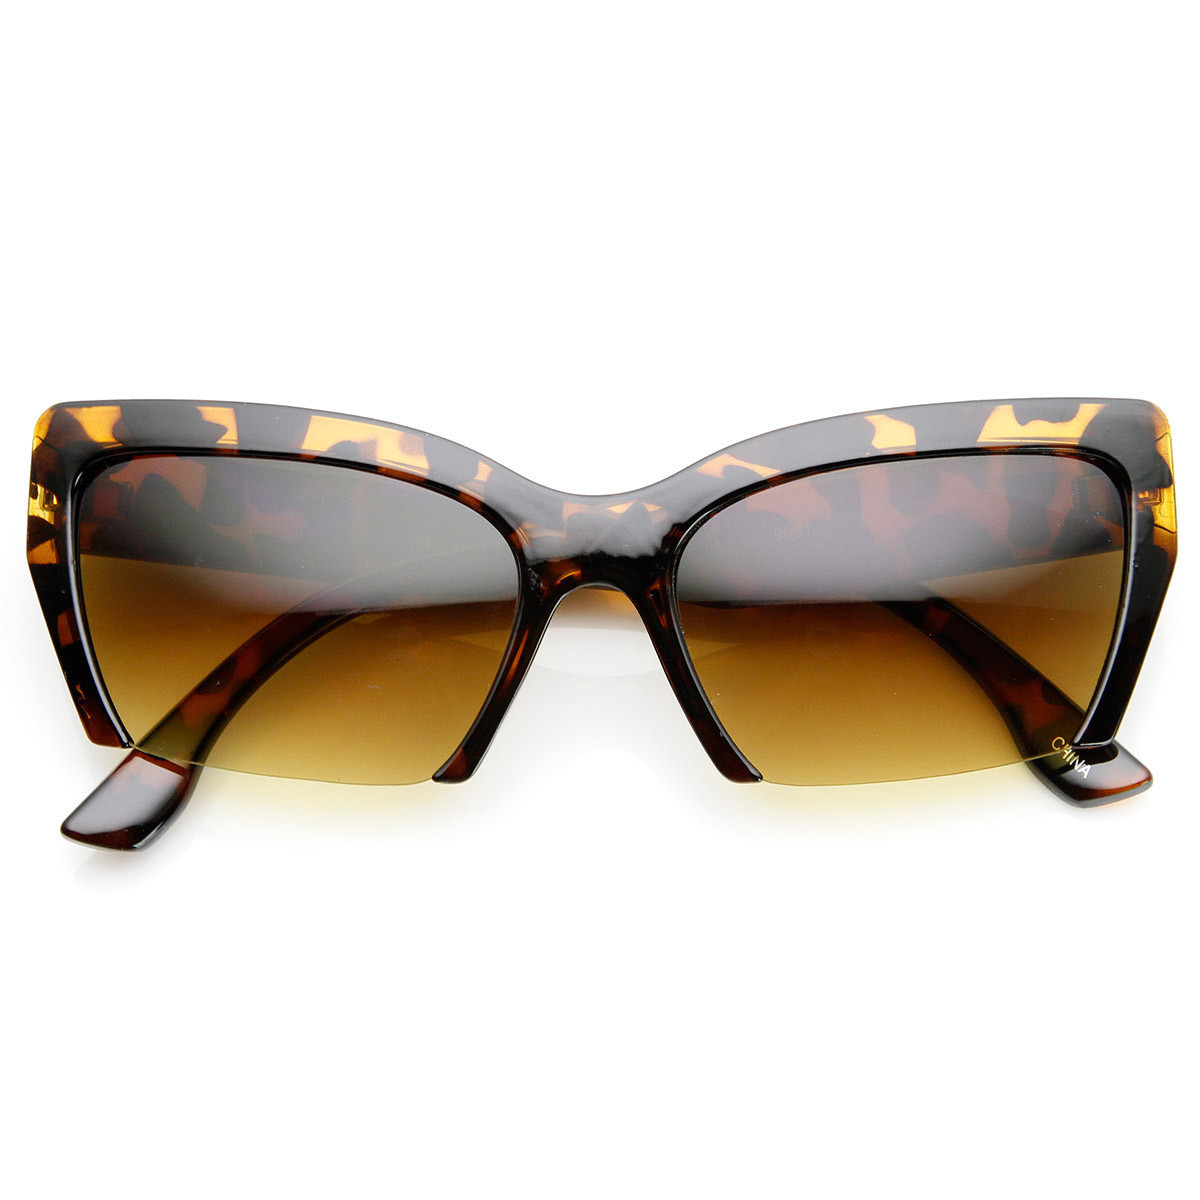 Womens Mod Fashion Semi-Rimless Cat Eye Sunglasses - 9228 - Yellow-Tortoise